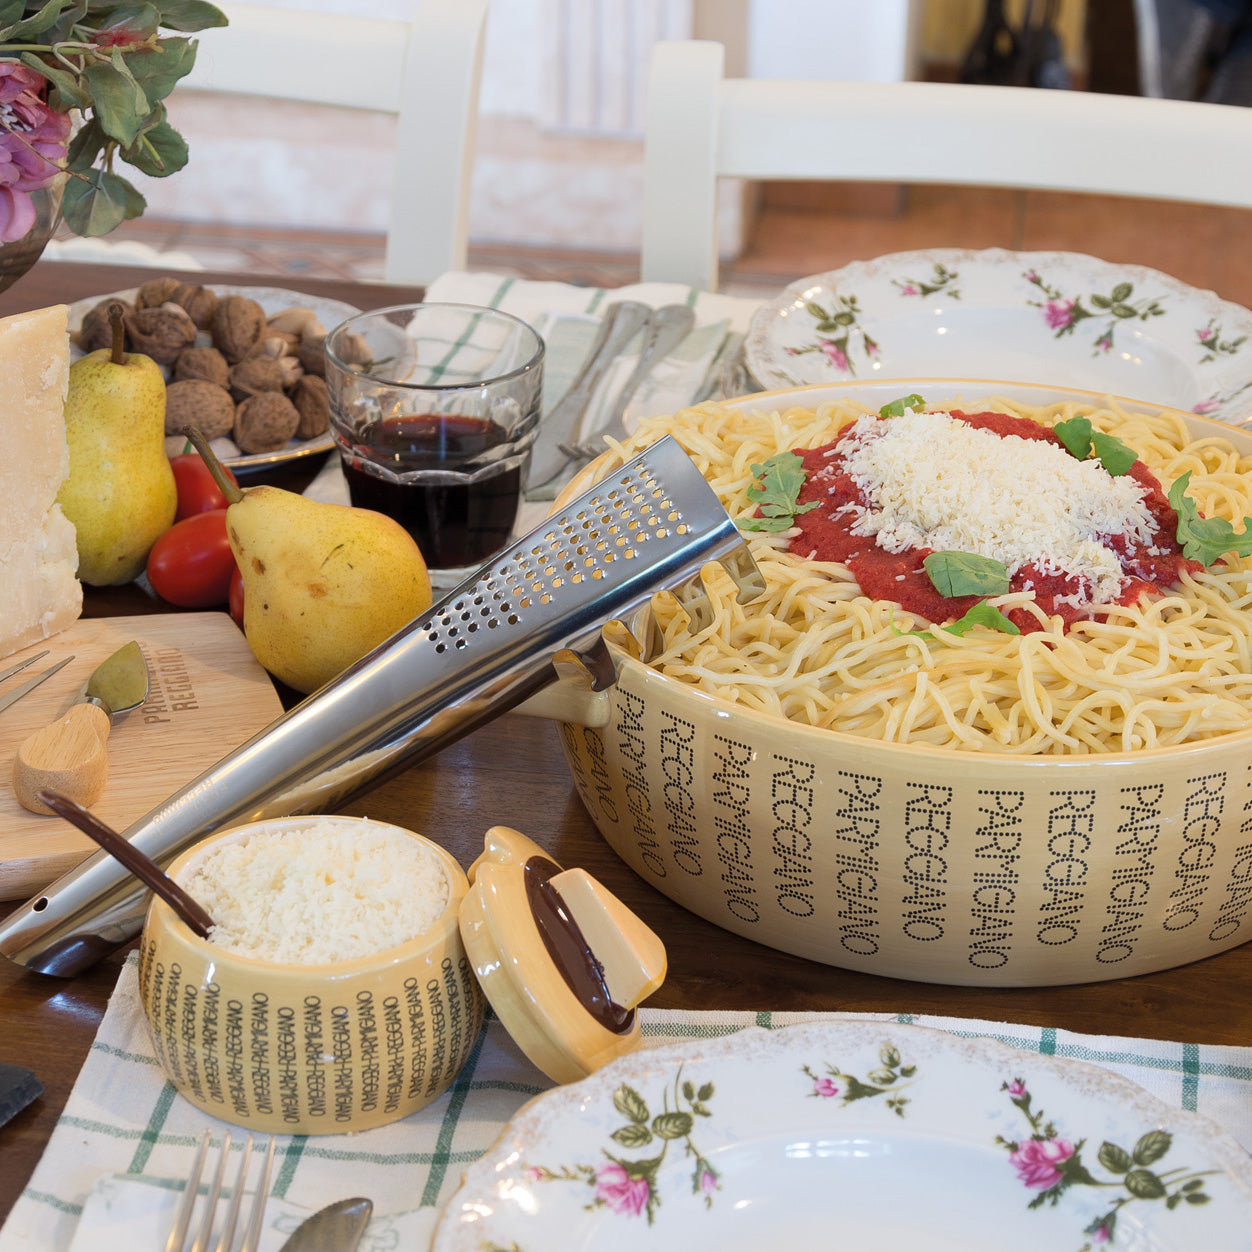 Spaghetti ladle with grater 'Parmigiano Reggiano'